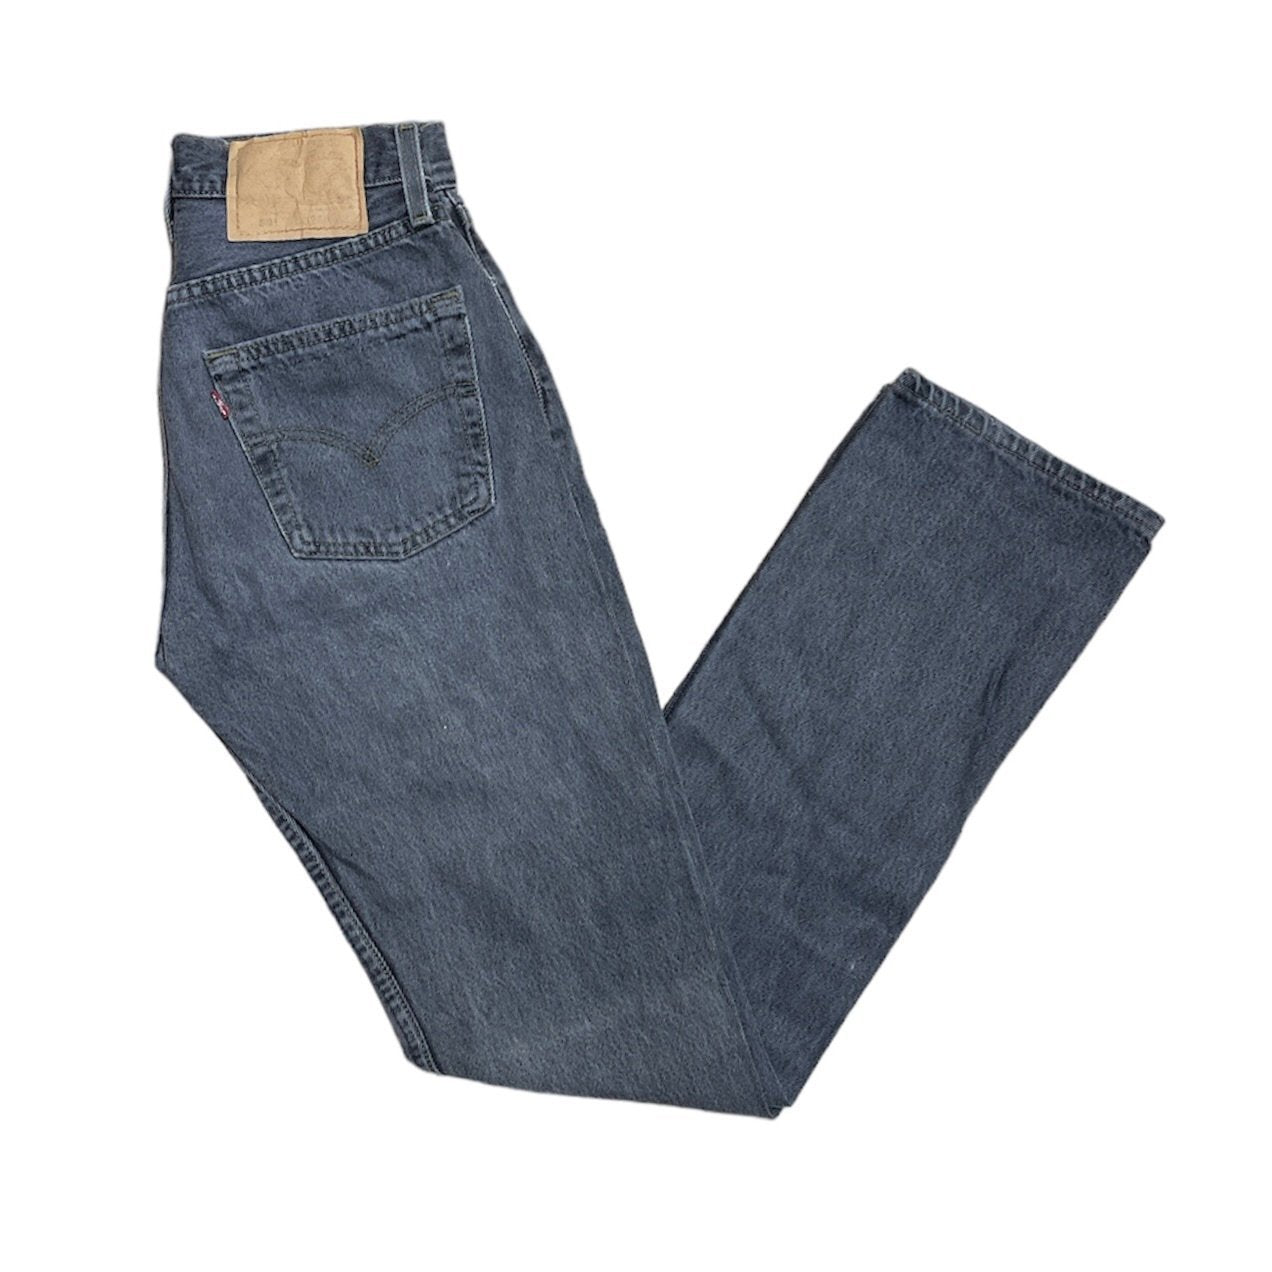 Vintage Levis 501 Grey Jeans (W26/L32) (W)